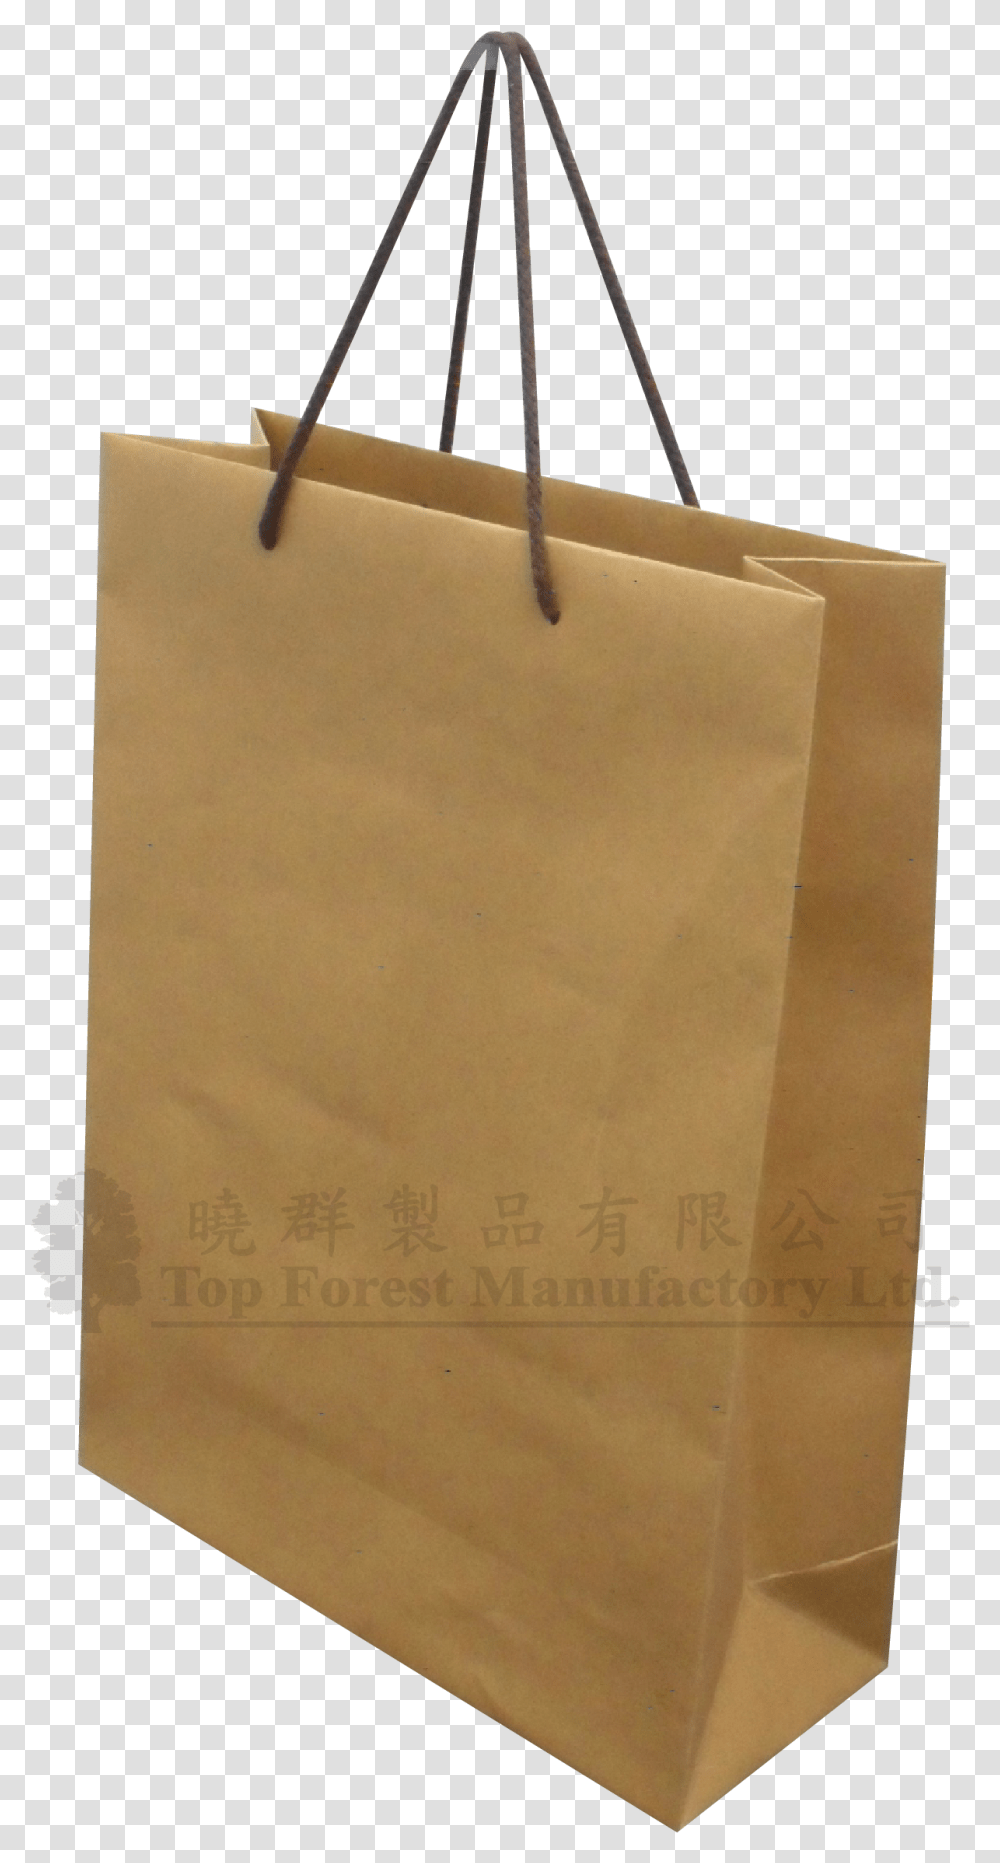 Paper Bag Tote Bag, Box, Shopping Bag Transparent Png